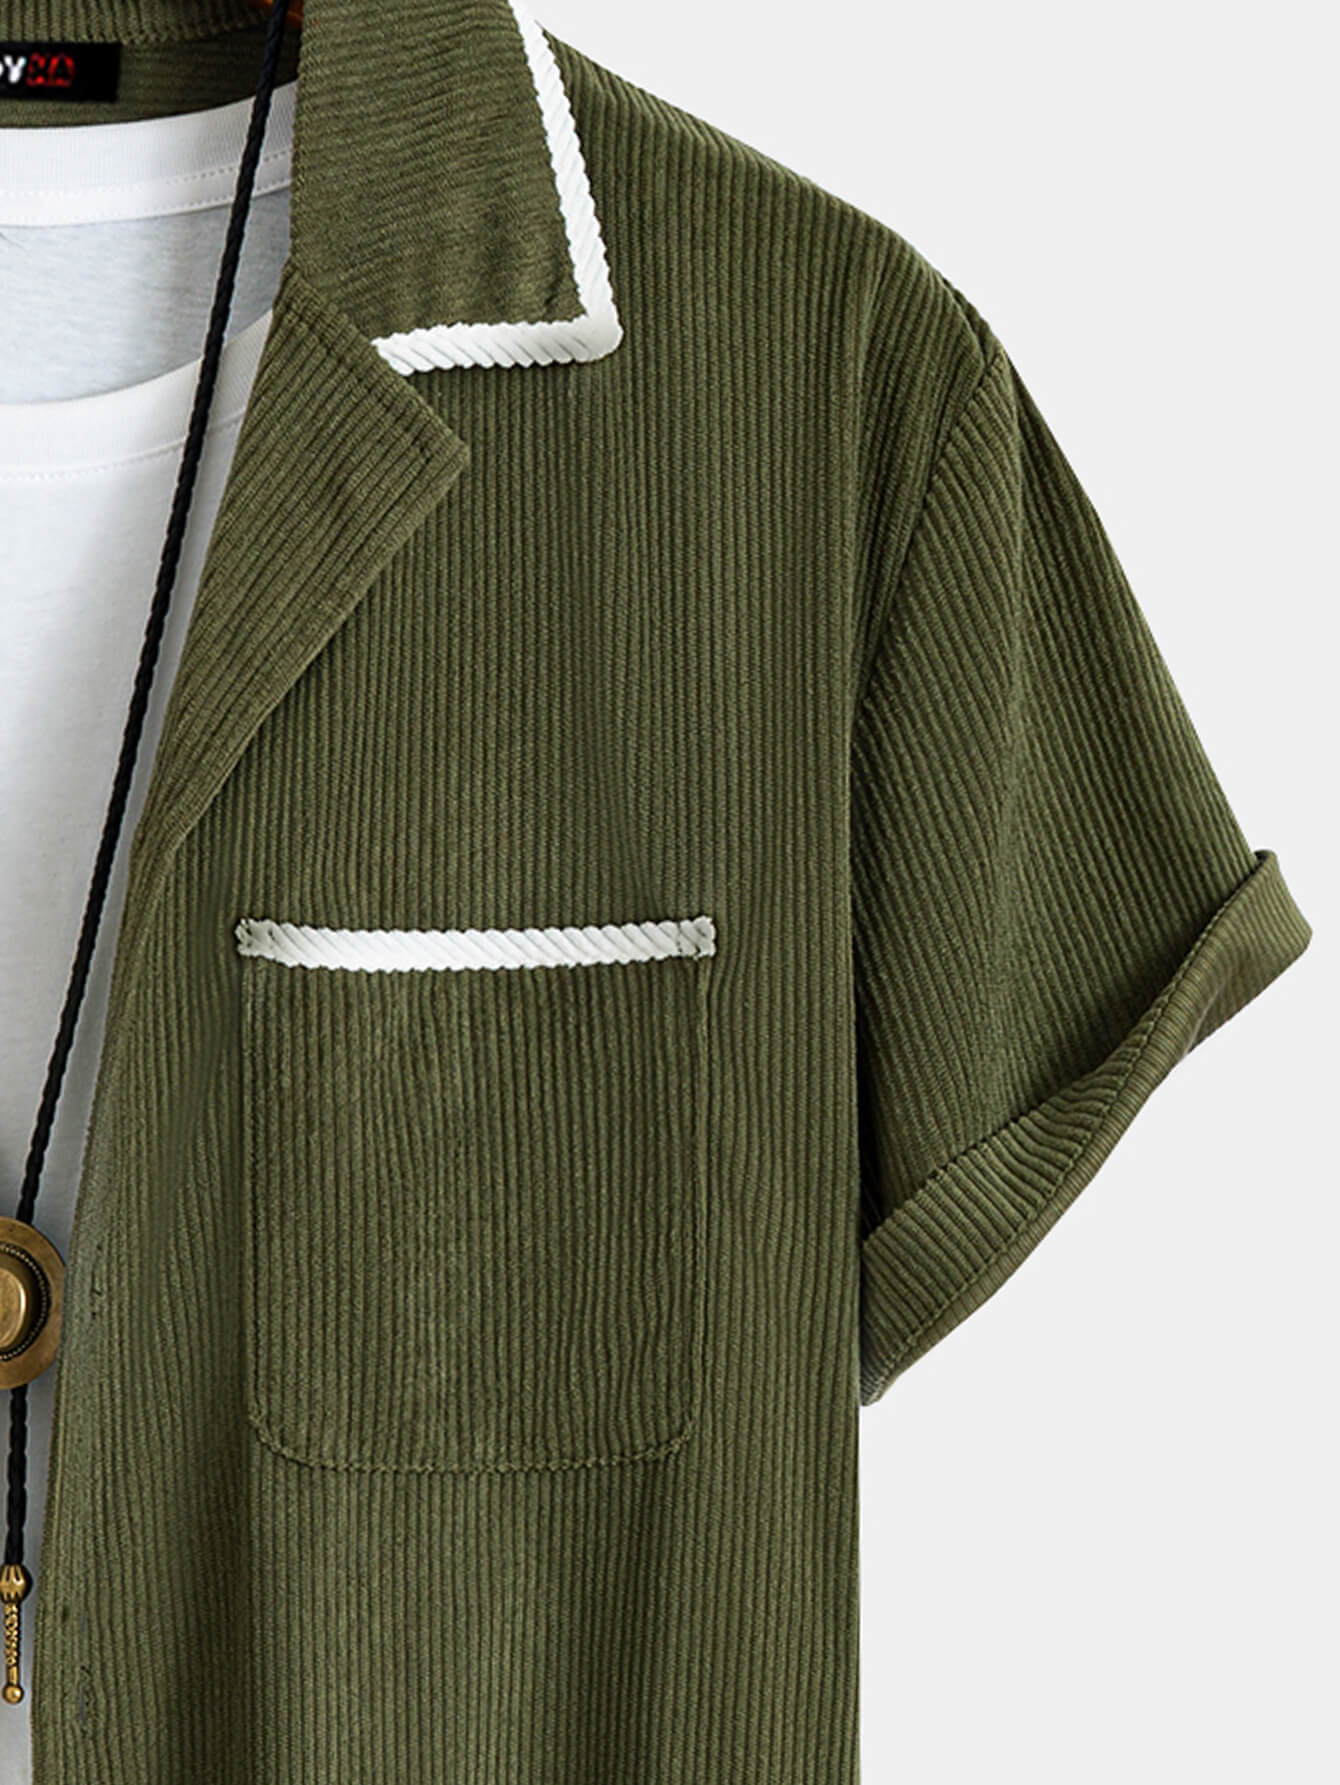 Men's Corduroy Green Short Sleeve Button Up Shirt